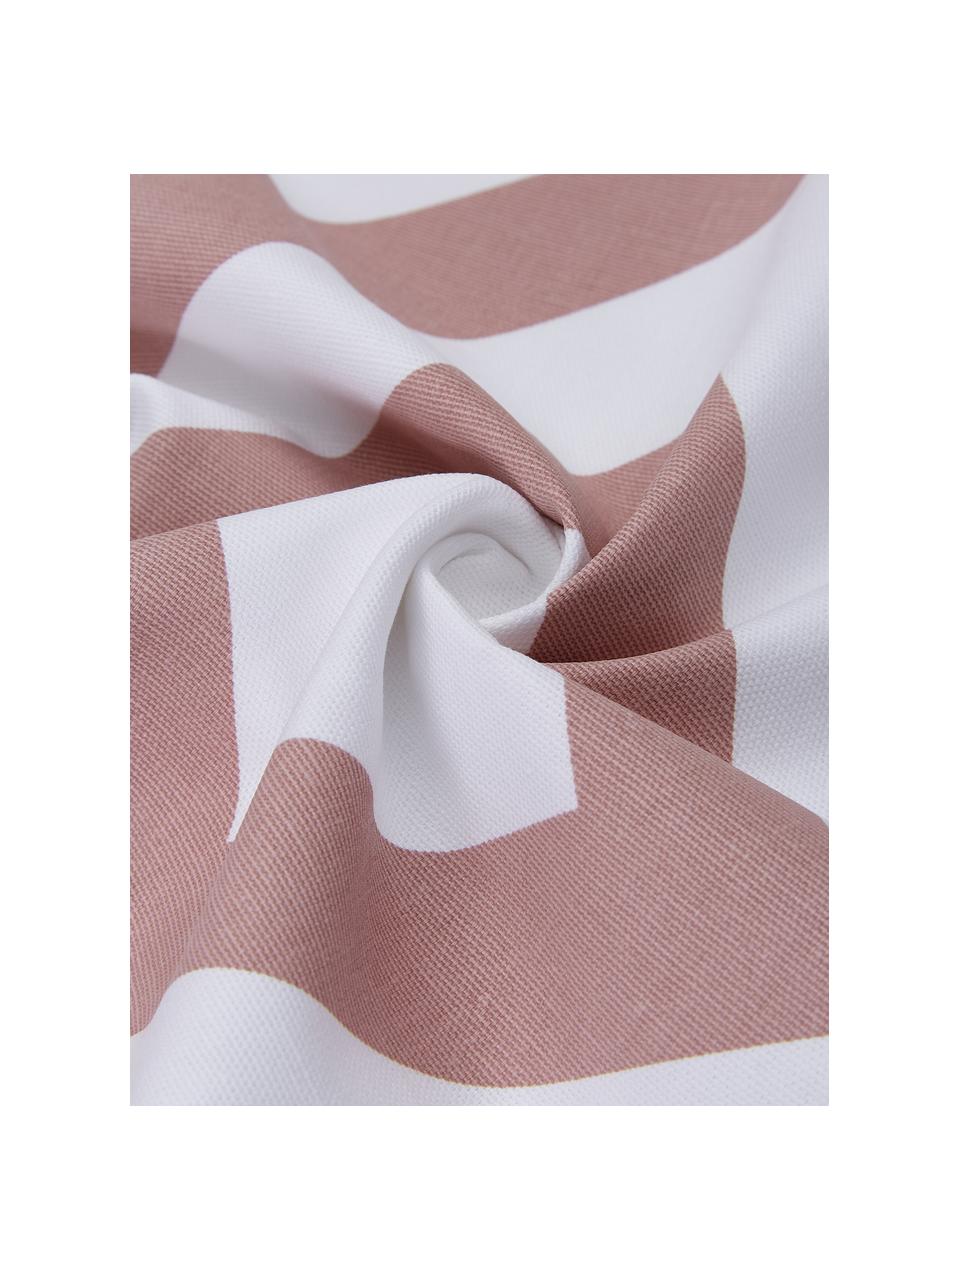 Poszewka na poduszkę Sera, 100% bawełna, Biały, brudny różowy, S 45 x D 45 cm